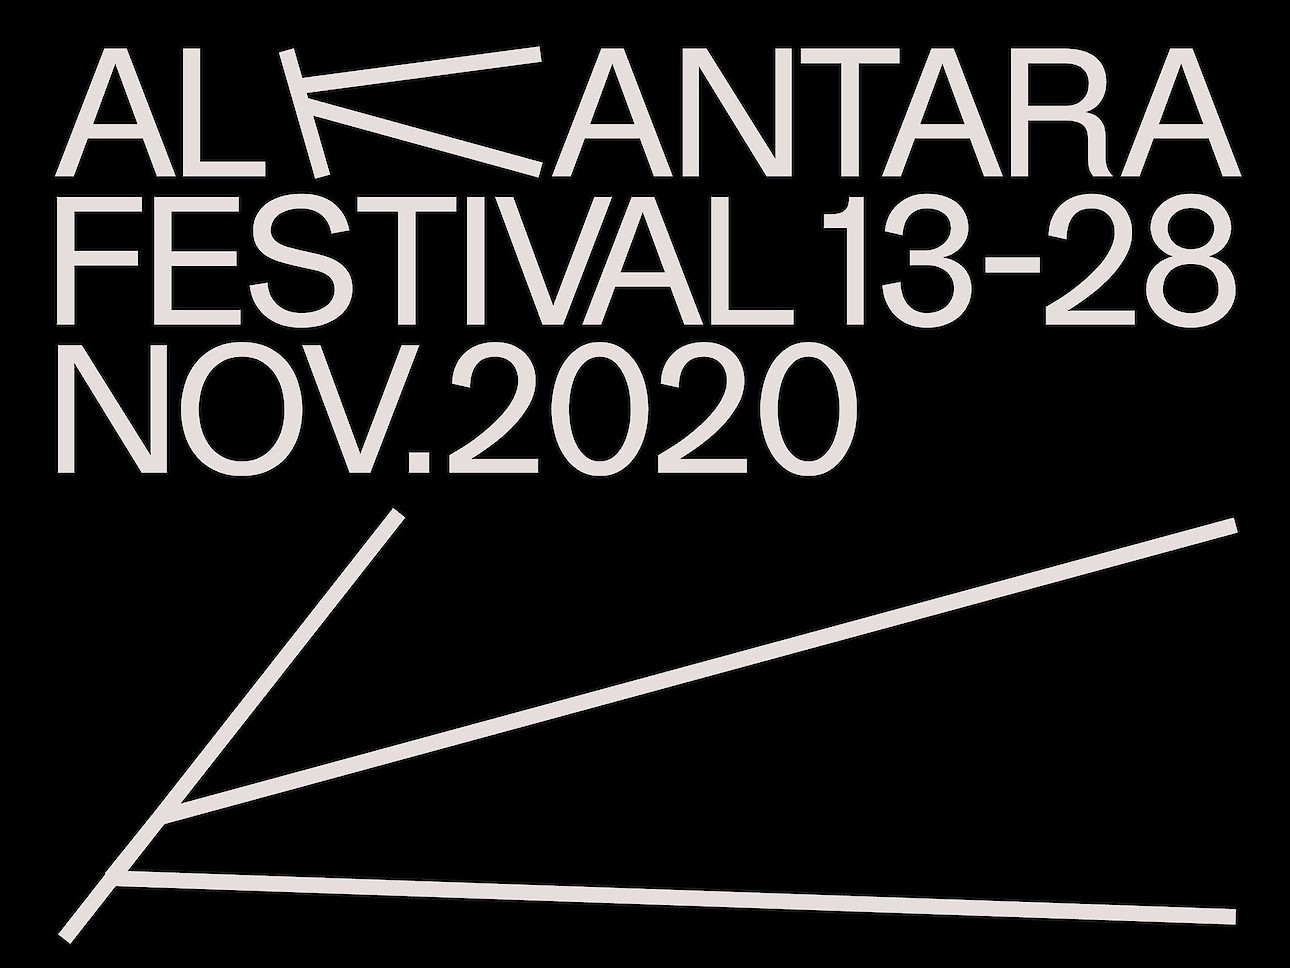 ALKANARA - Alkantara Festival 2020 - ©